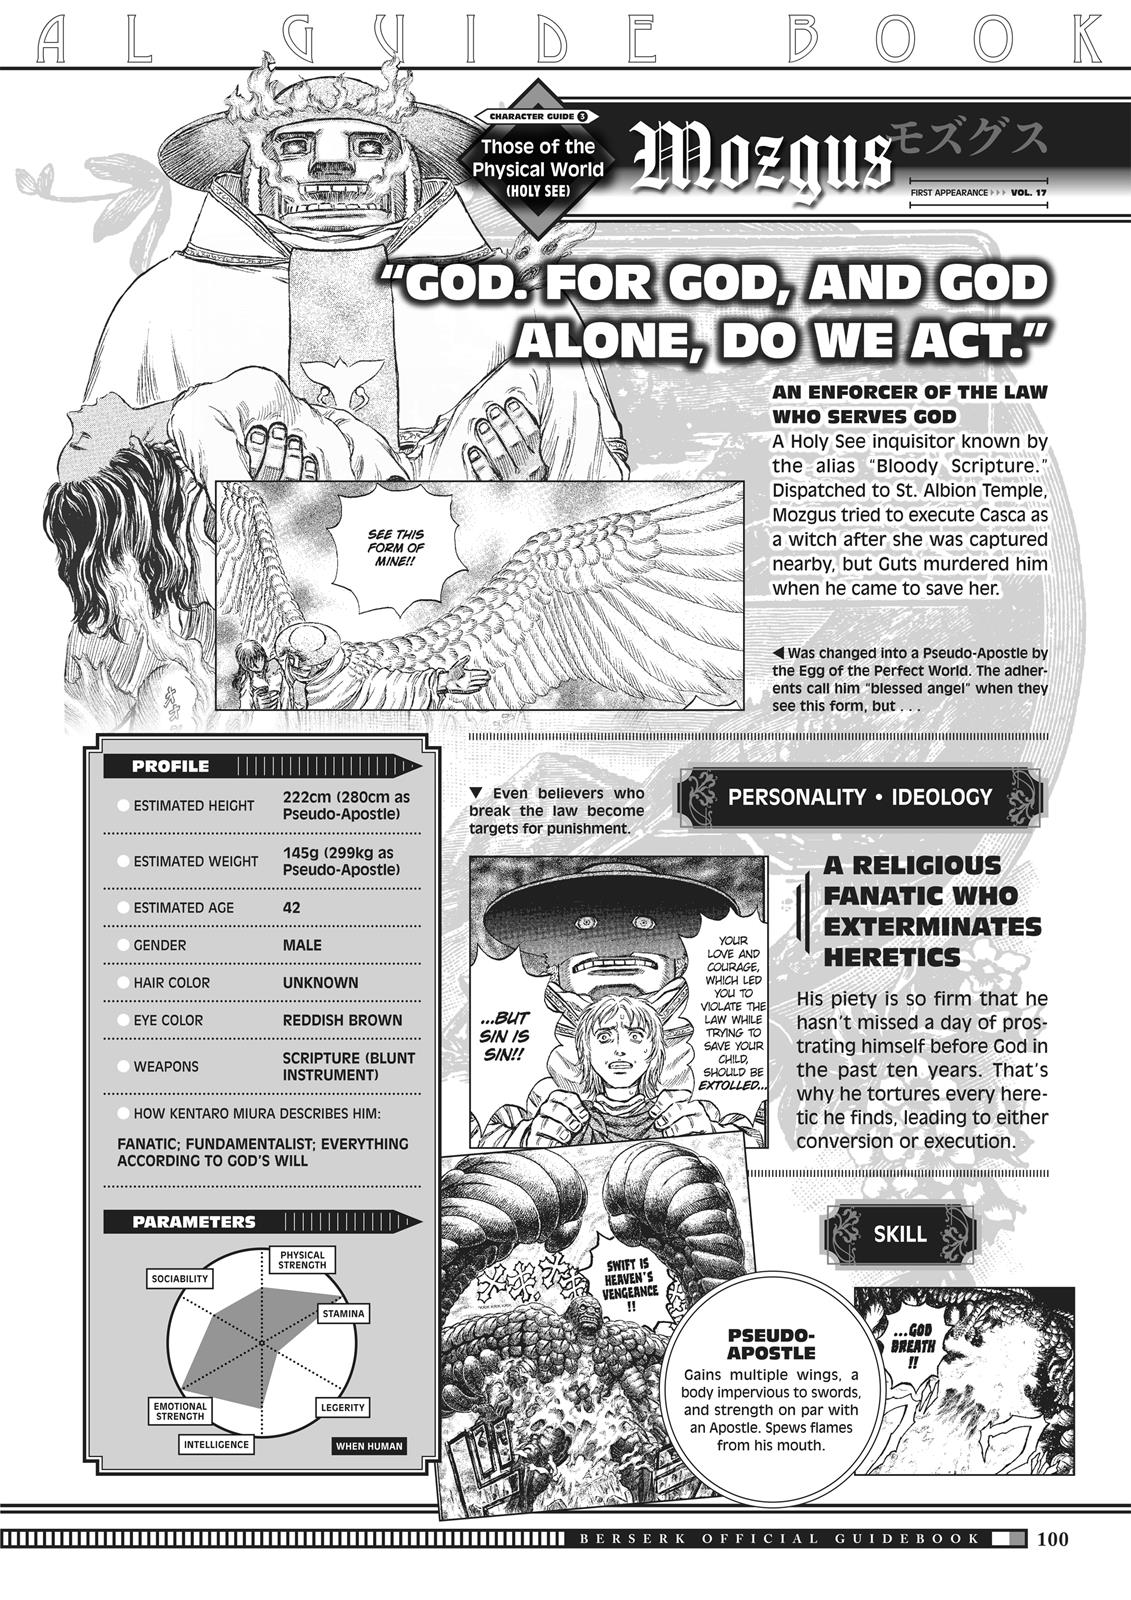 Berserk Manga Chapter 350.5 image 098